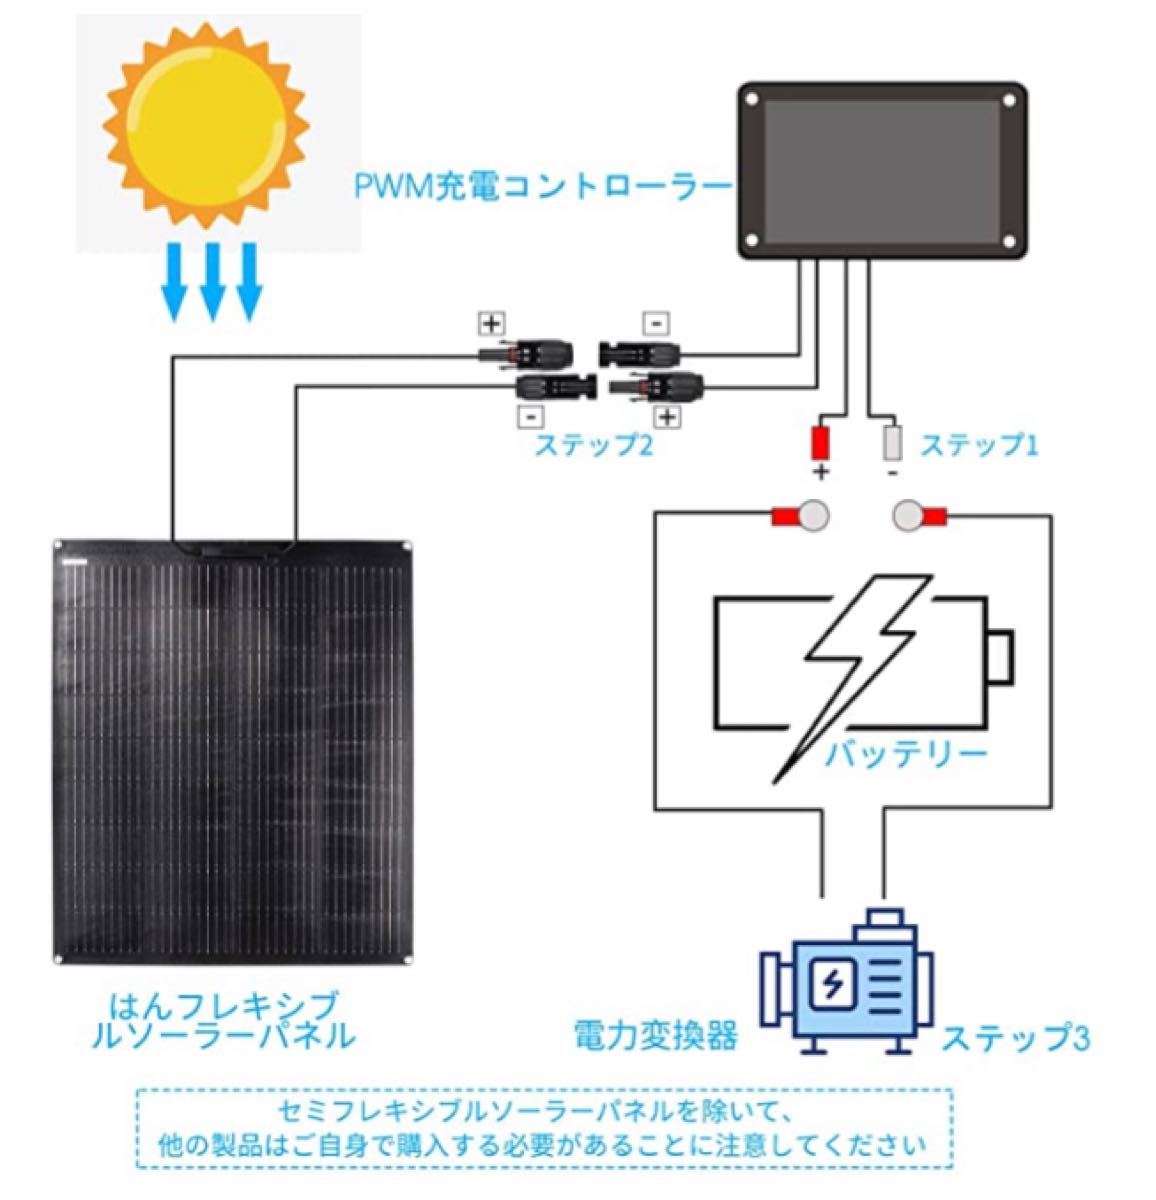 【フレキシブル ソーラーパネル】 100w 12v 高品質 防水 アウトドア 